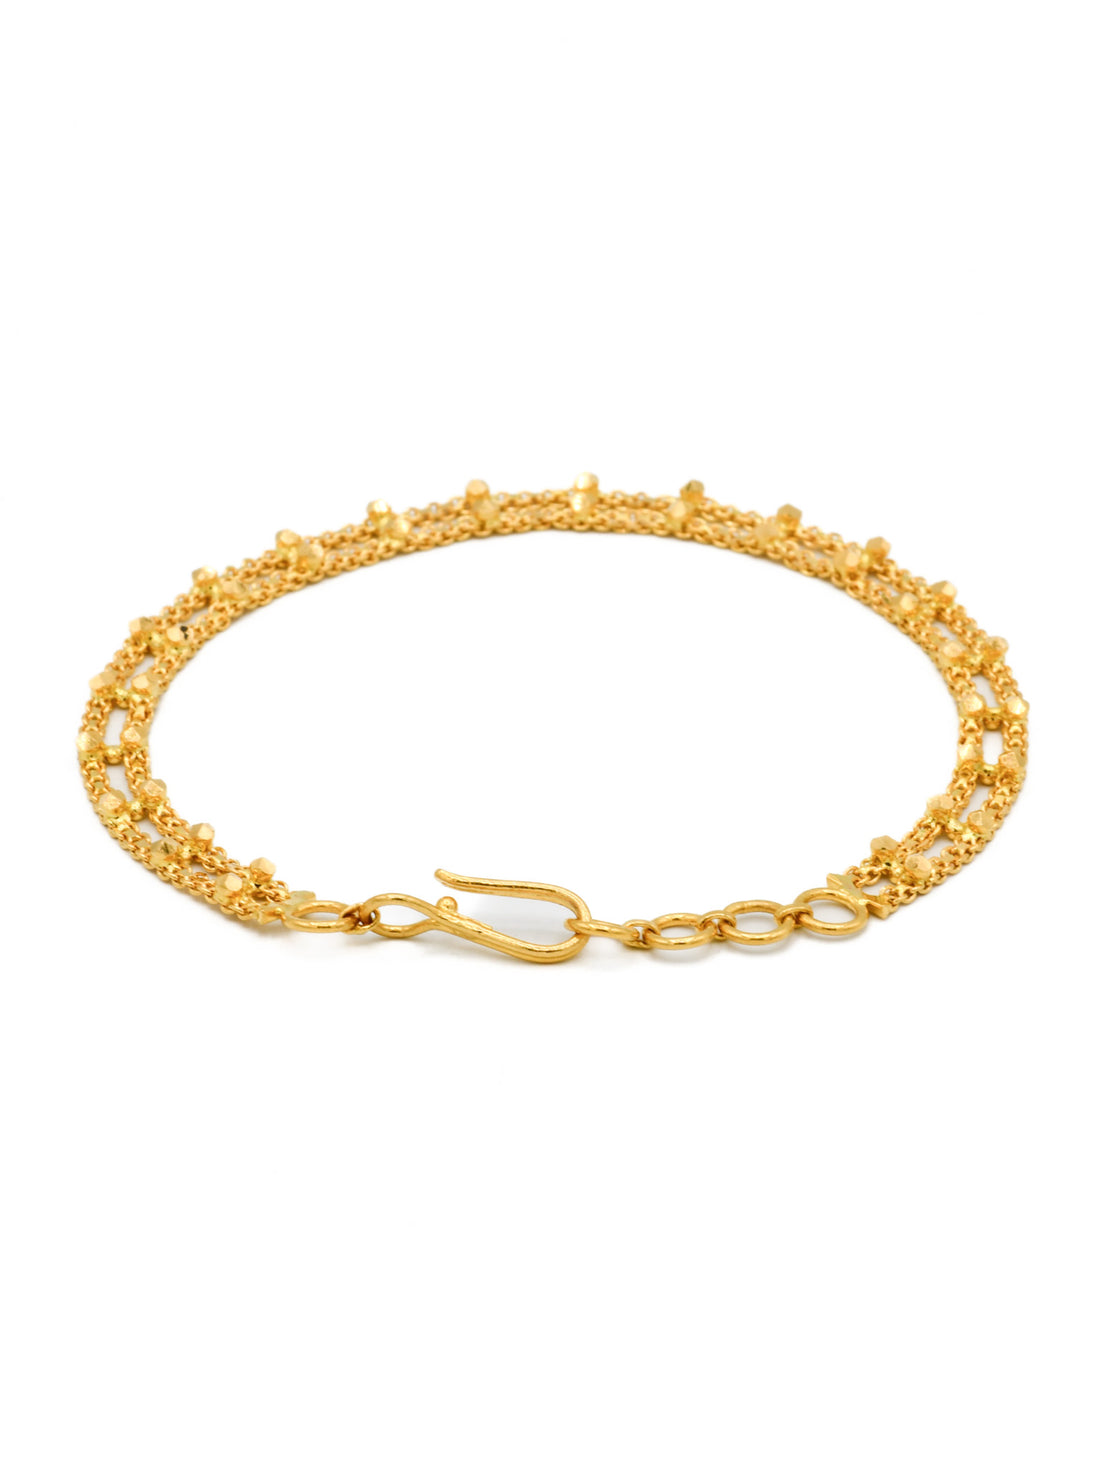 22ct Gold 2 Row Ladies Bracelet